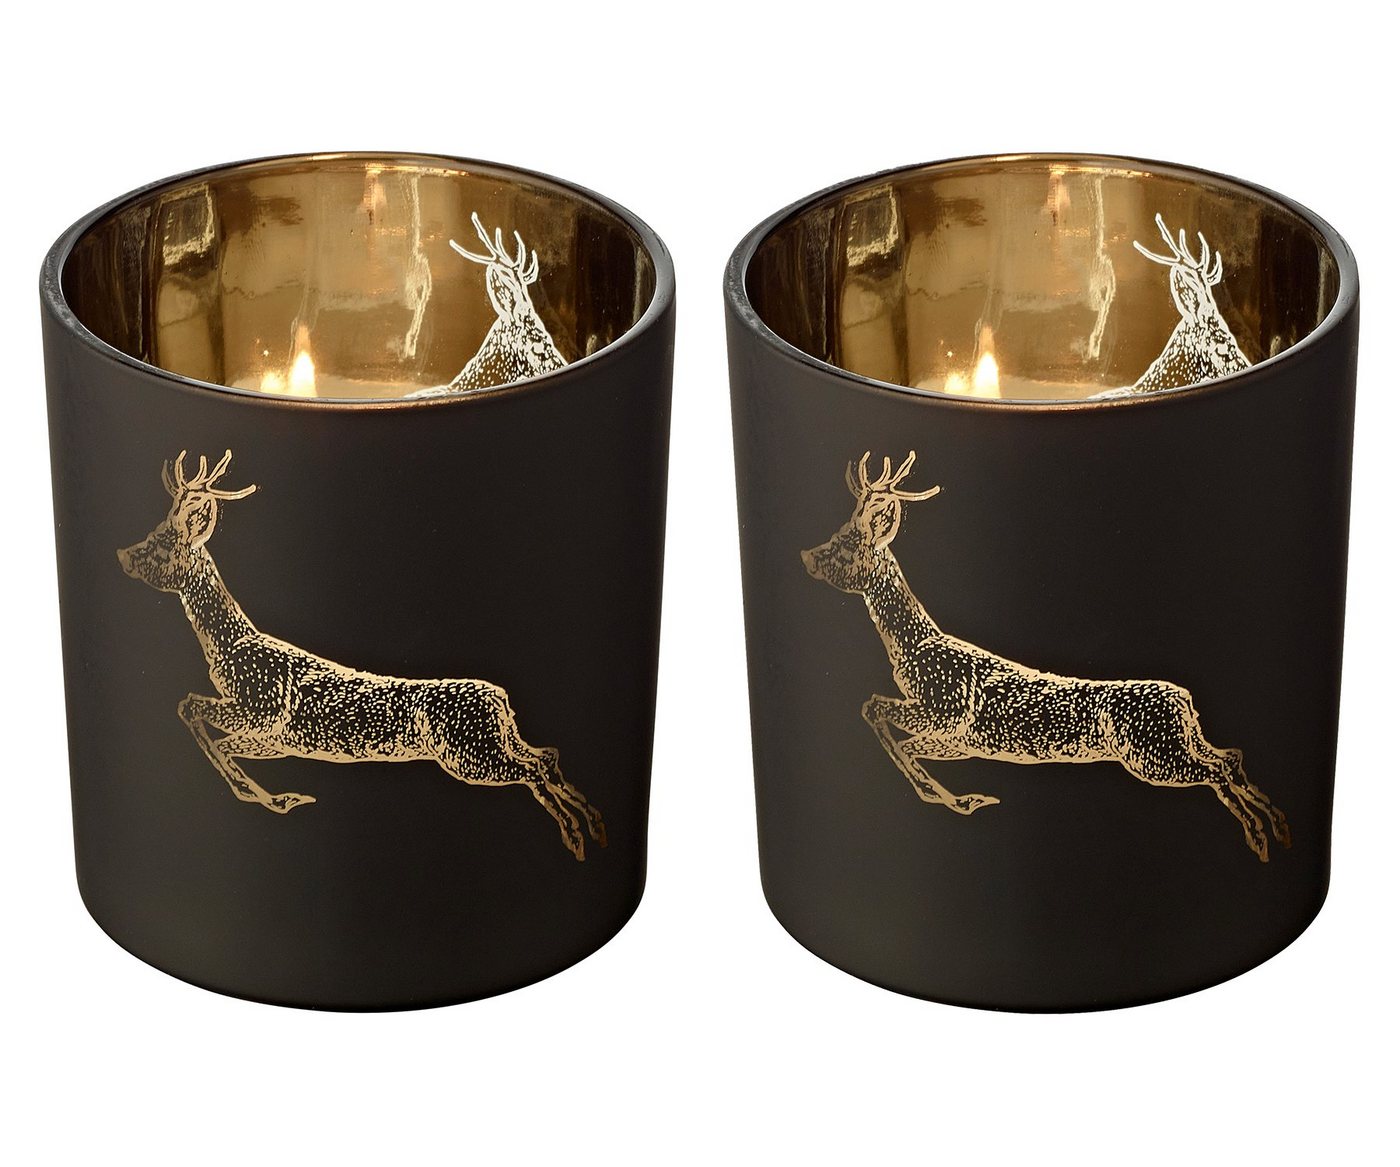 EDZARD Windlicht Sammy, Kerzenglas-Set für Teelichter mit Hirsch-Motiv in Gold-Optik, Kerzenhalter für Teelicht und Maxi-Teelicht, Höhe 8 cm, Ø 7 cm von EDZARD